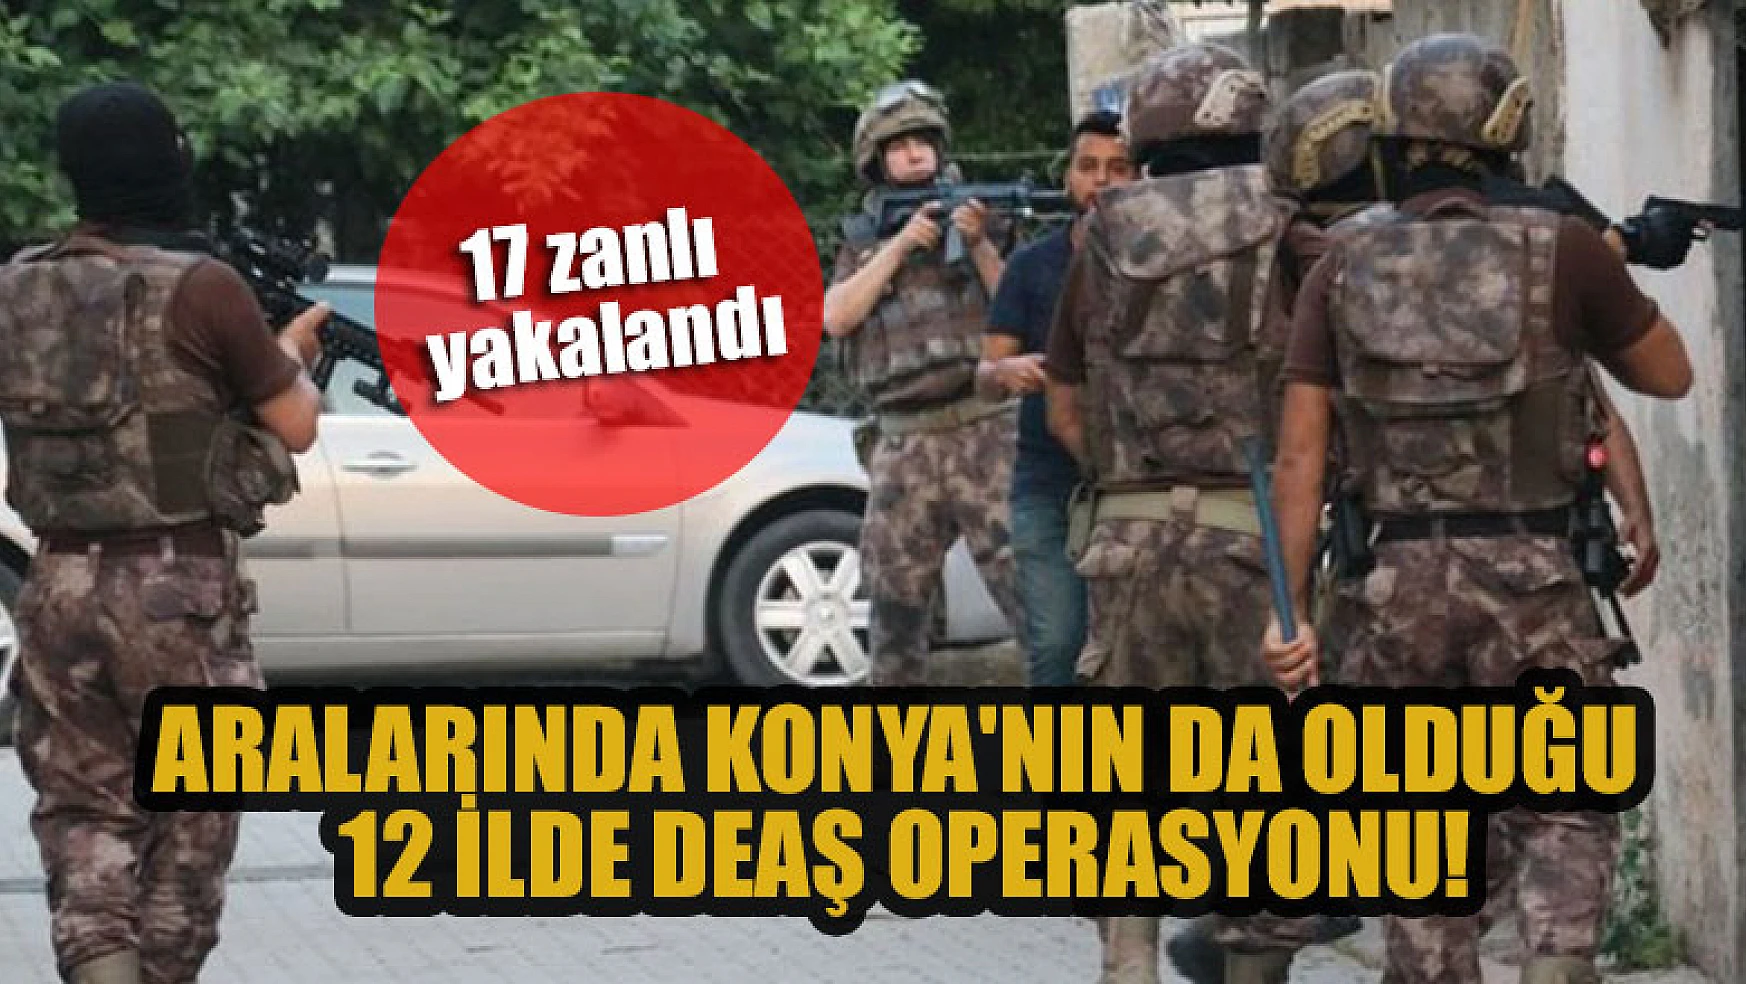 Aralarında Konya'nın da olduğu 12 ilde DEAŞ operasyonu: 17 zanlı yakalandı